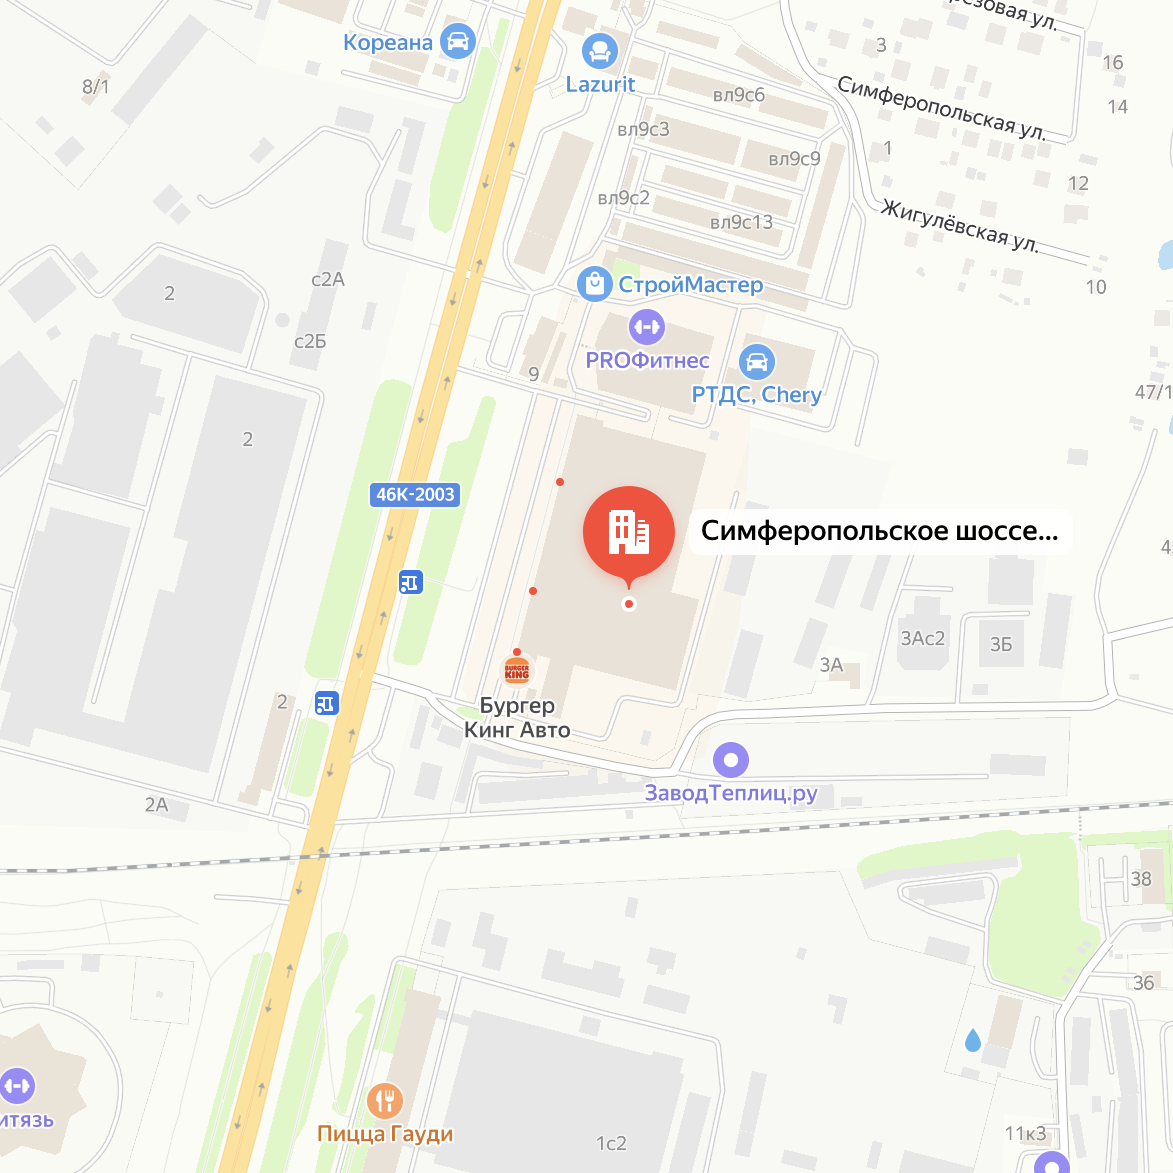 Московская область, г. Чехов, Симферопольское шоссе, д. 1, гипермаркет "Карусель"